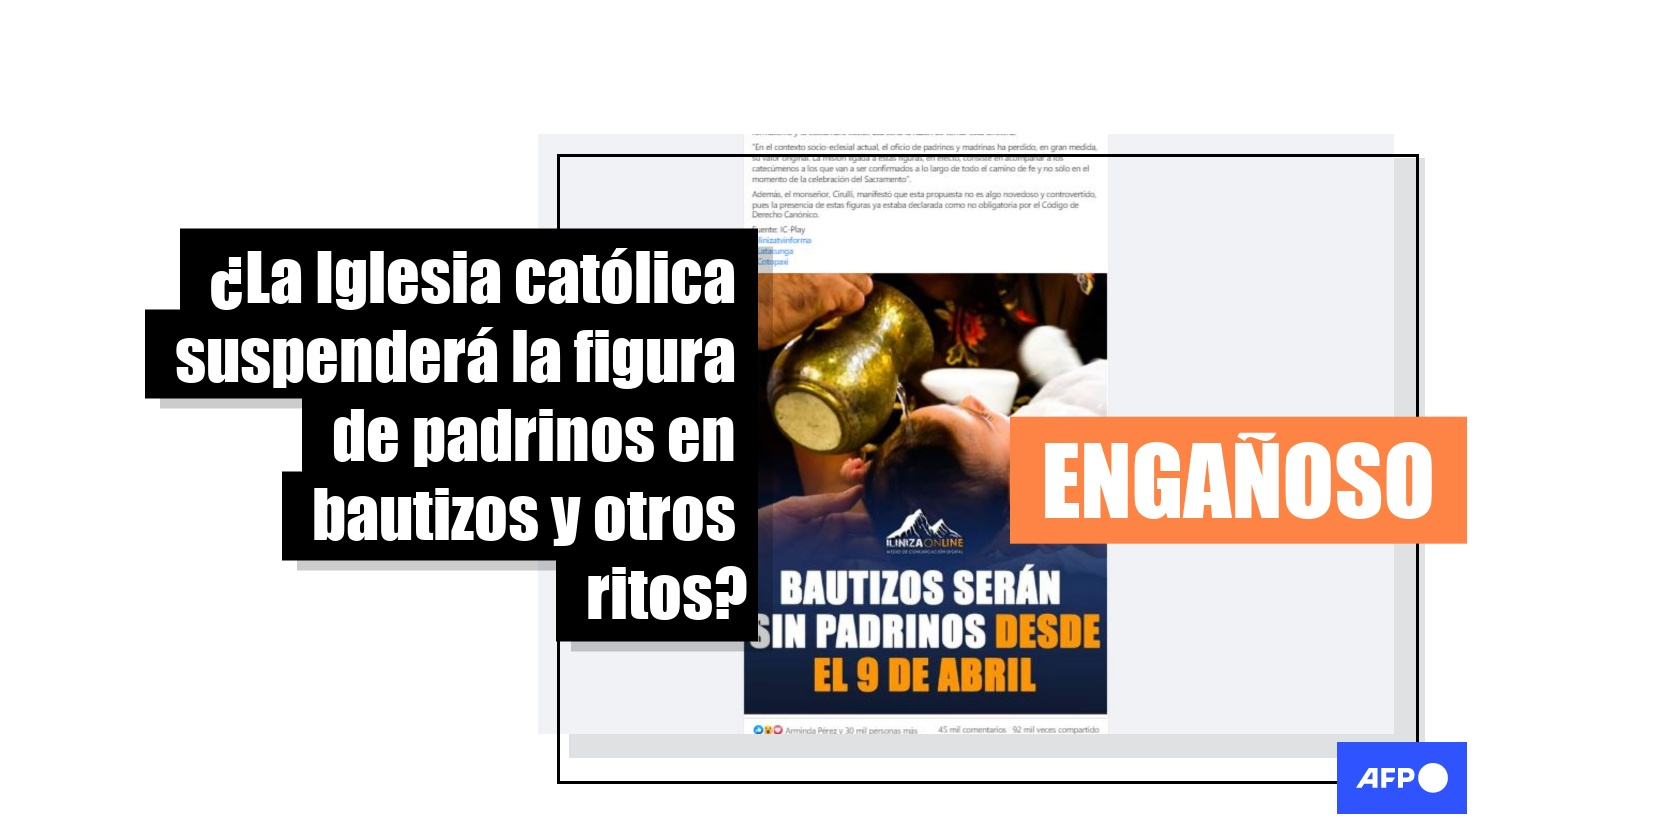 La iglesia católica eliminará a los padrinos de bautizo? No en México, sólo  en el sur de Italia